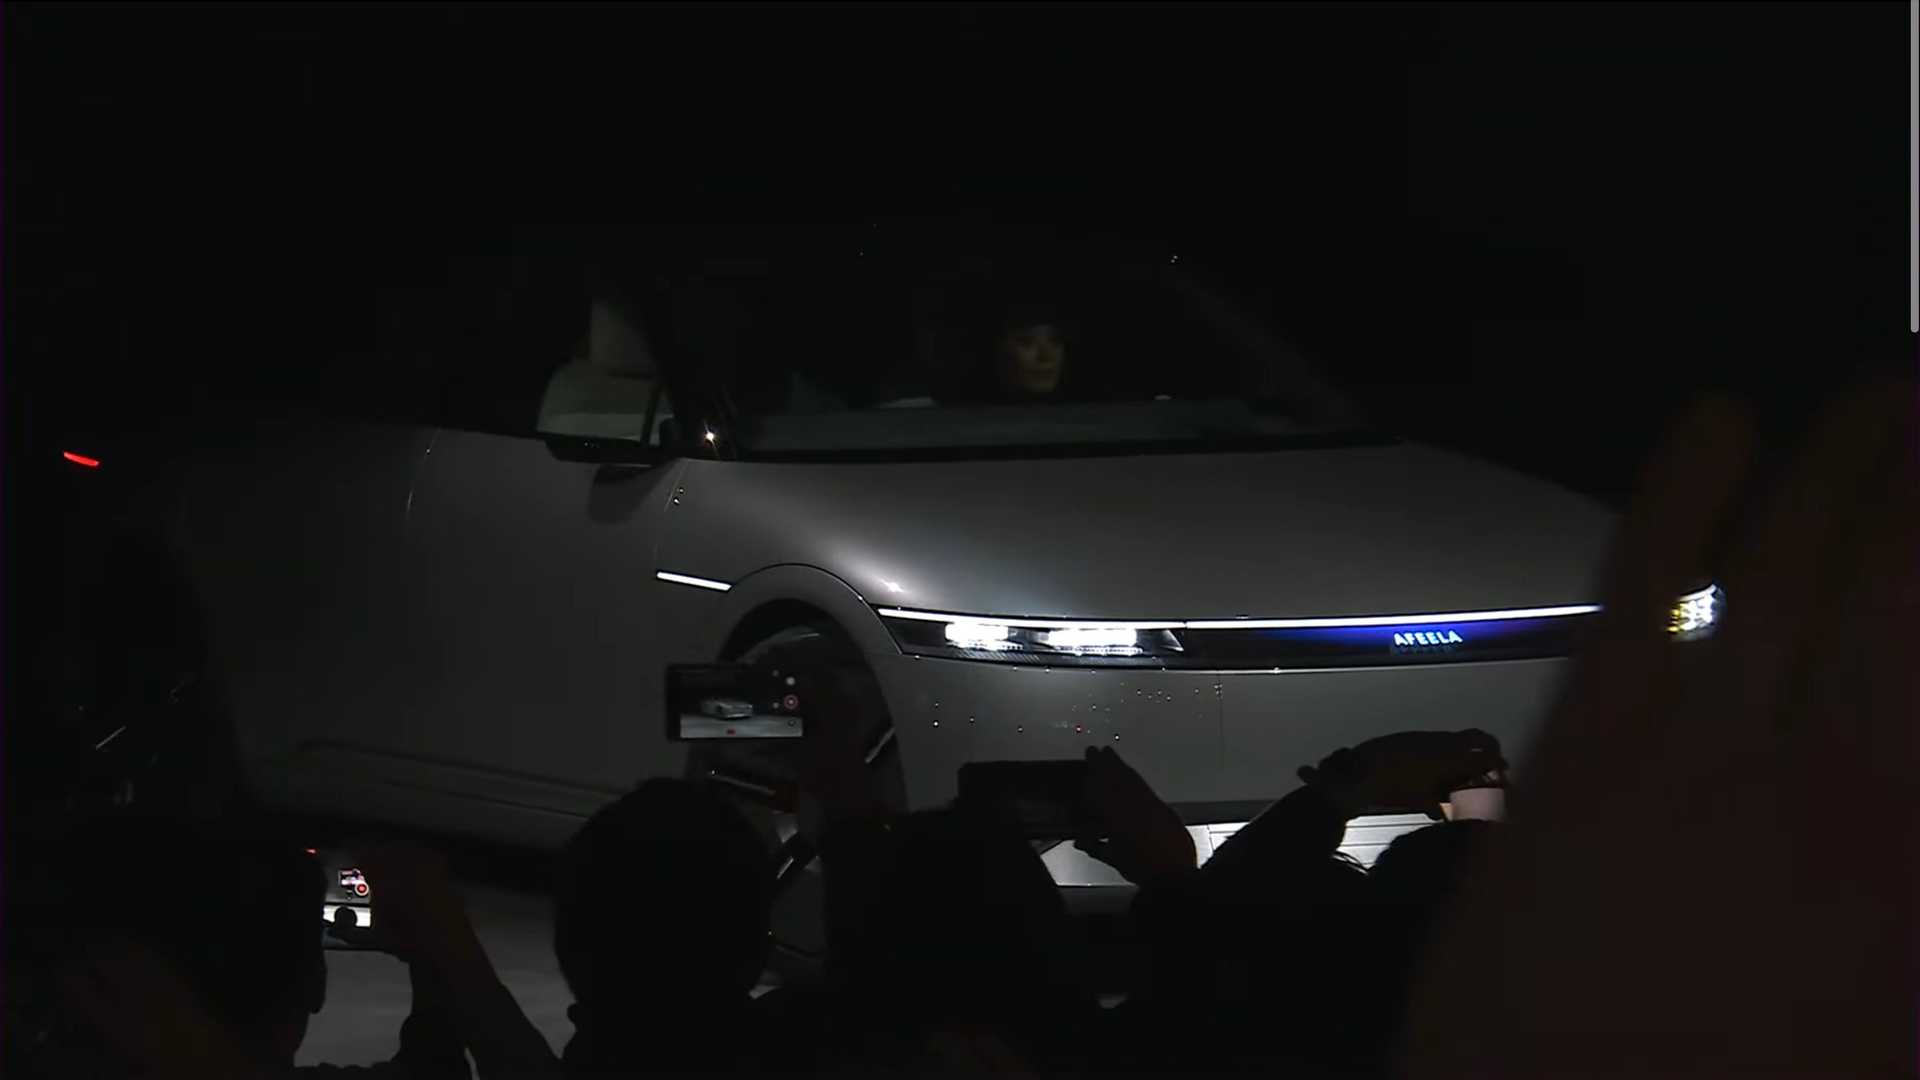 سوني تطلق علامتها التجارية الجديدة للسيارات رسمياً بالتعاون مع هوندا 26